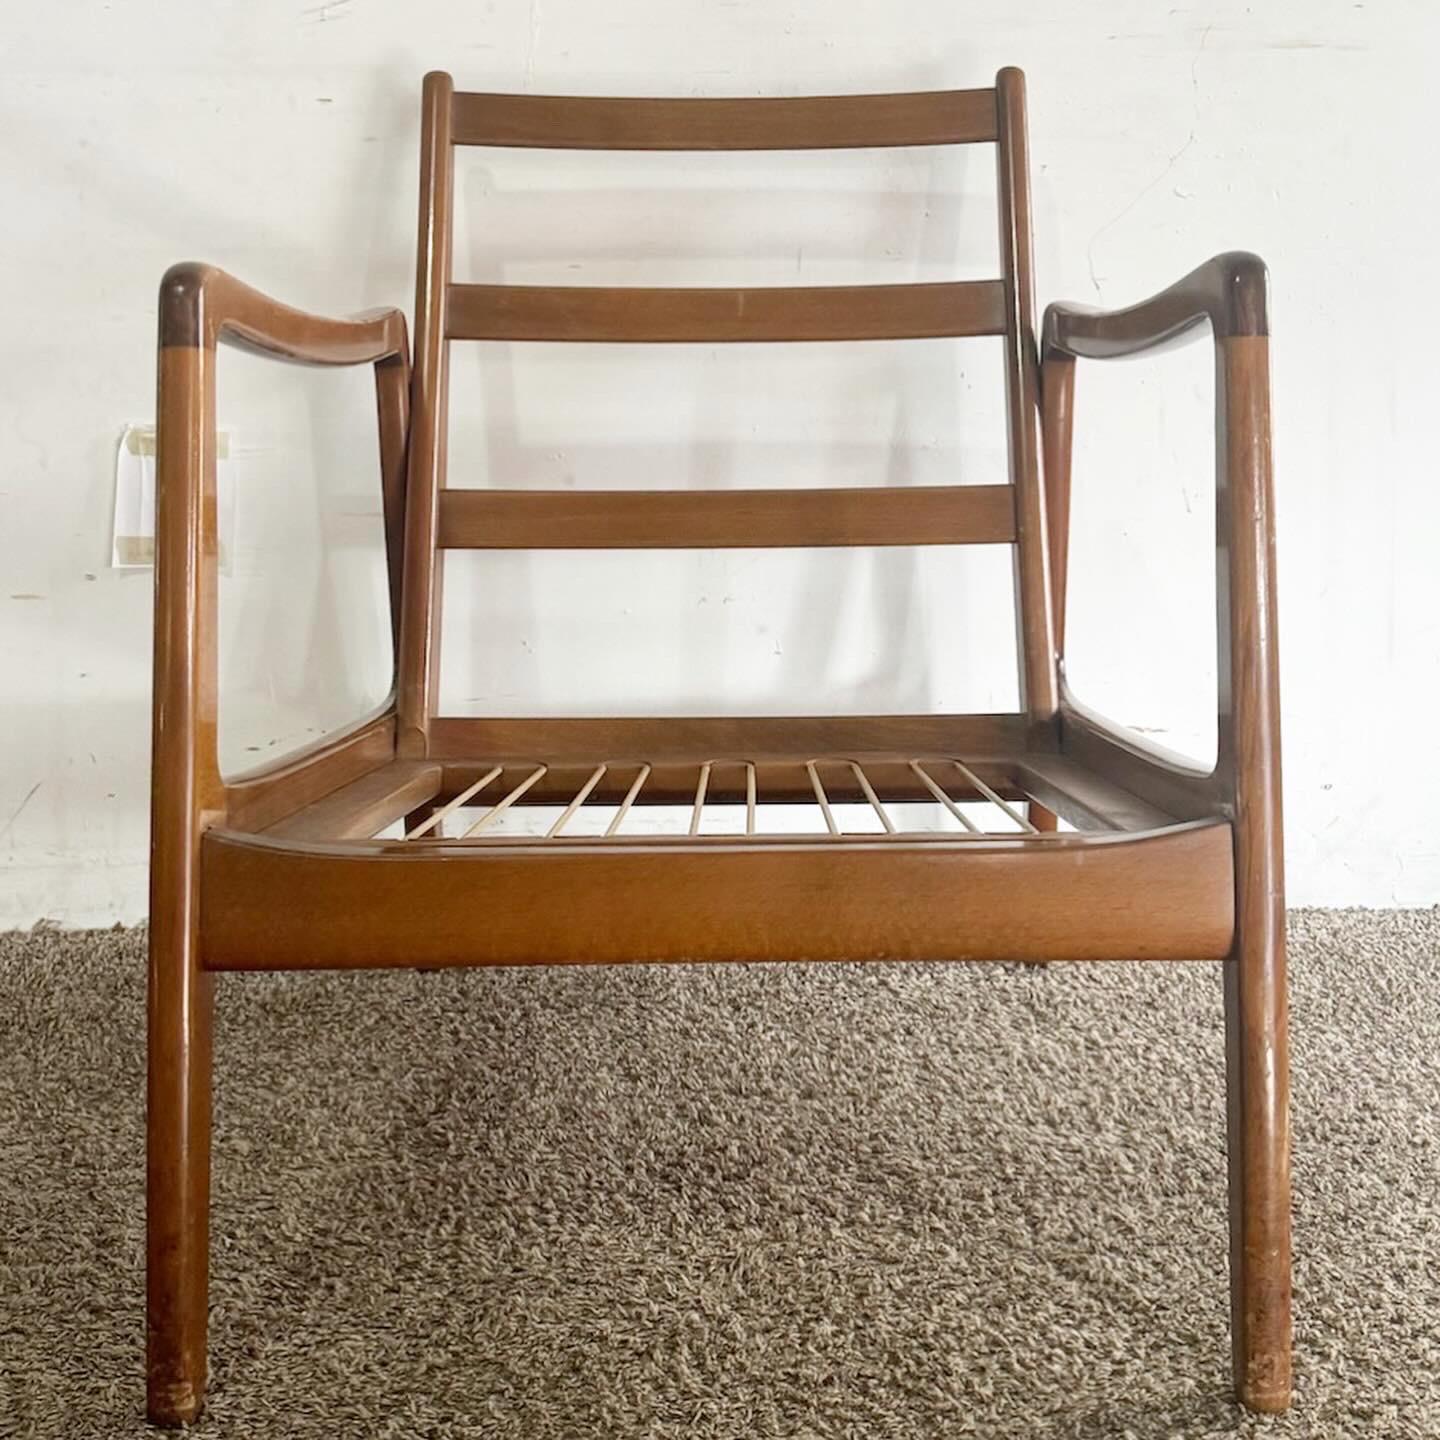 Der Danish Modern Lounge Arm Chair von France und Daverkosen ist ein Meisterwerk des Designs, das sich durch klare Linien und organische Formen auszeichnet. Dieser von der renommierten Marke gefertigte Stuhl verfügt über einen eleganten Holzrahmen